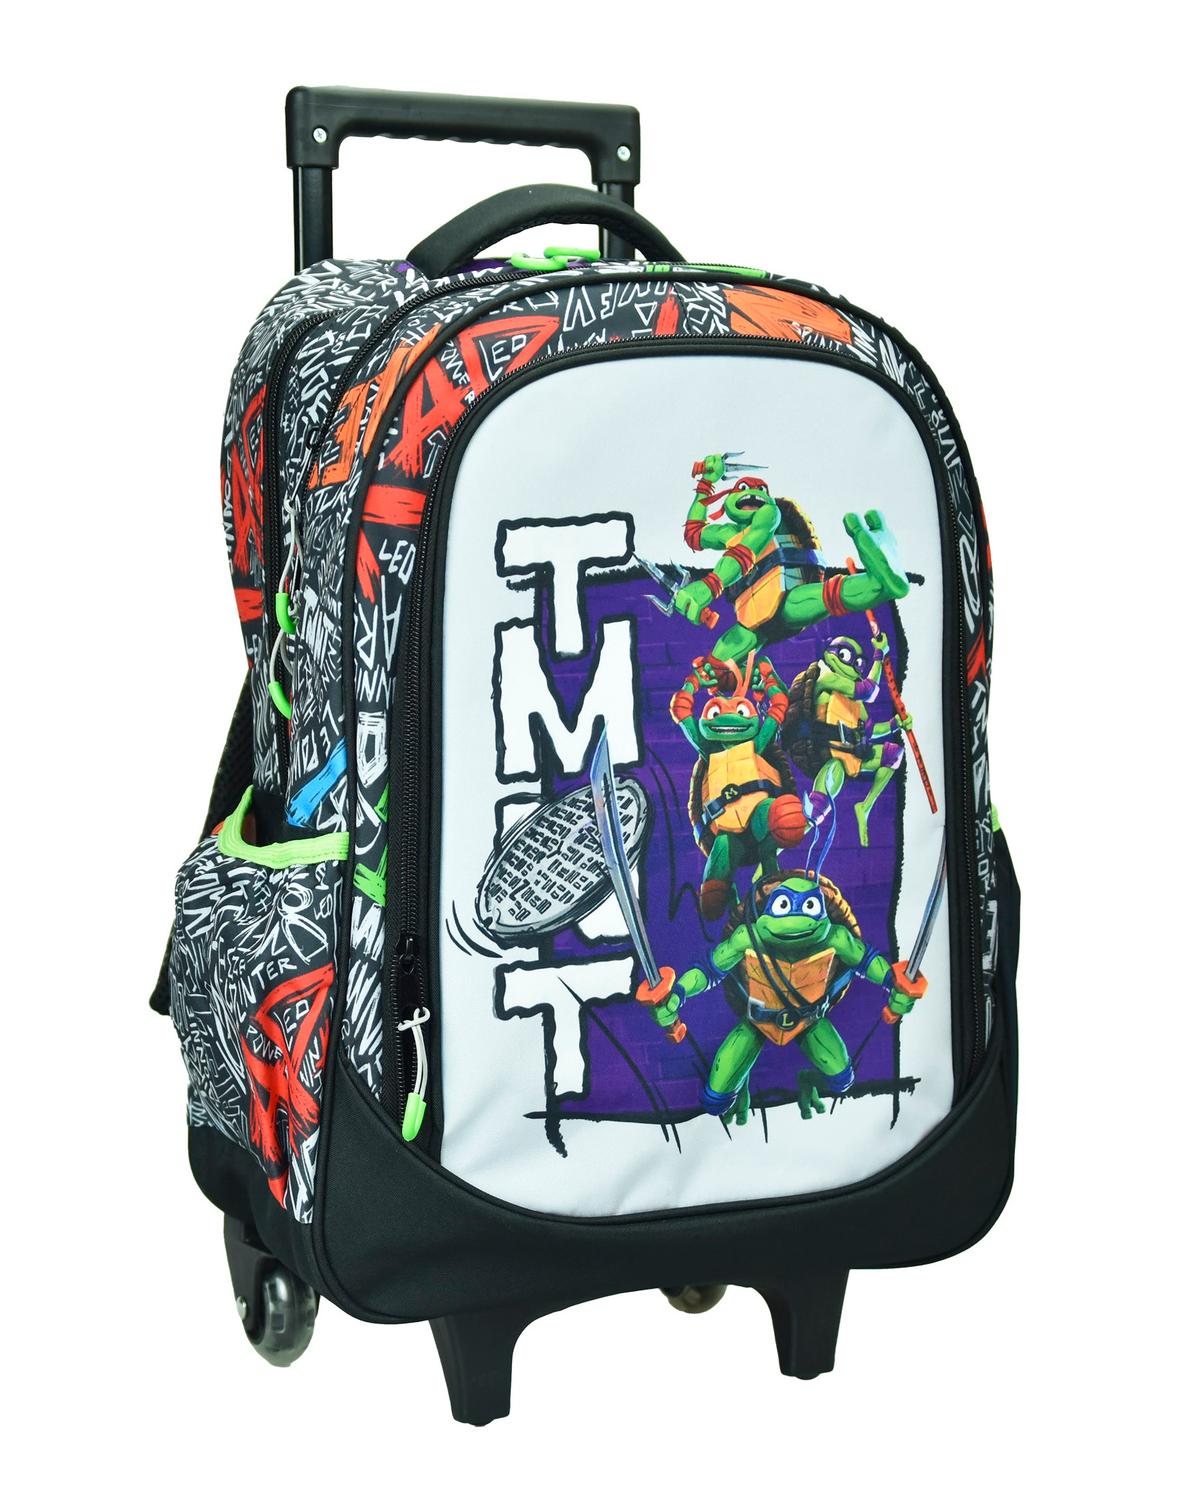 Τσάντα τρόλλευ δημοτικού Ninja Turtles